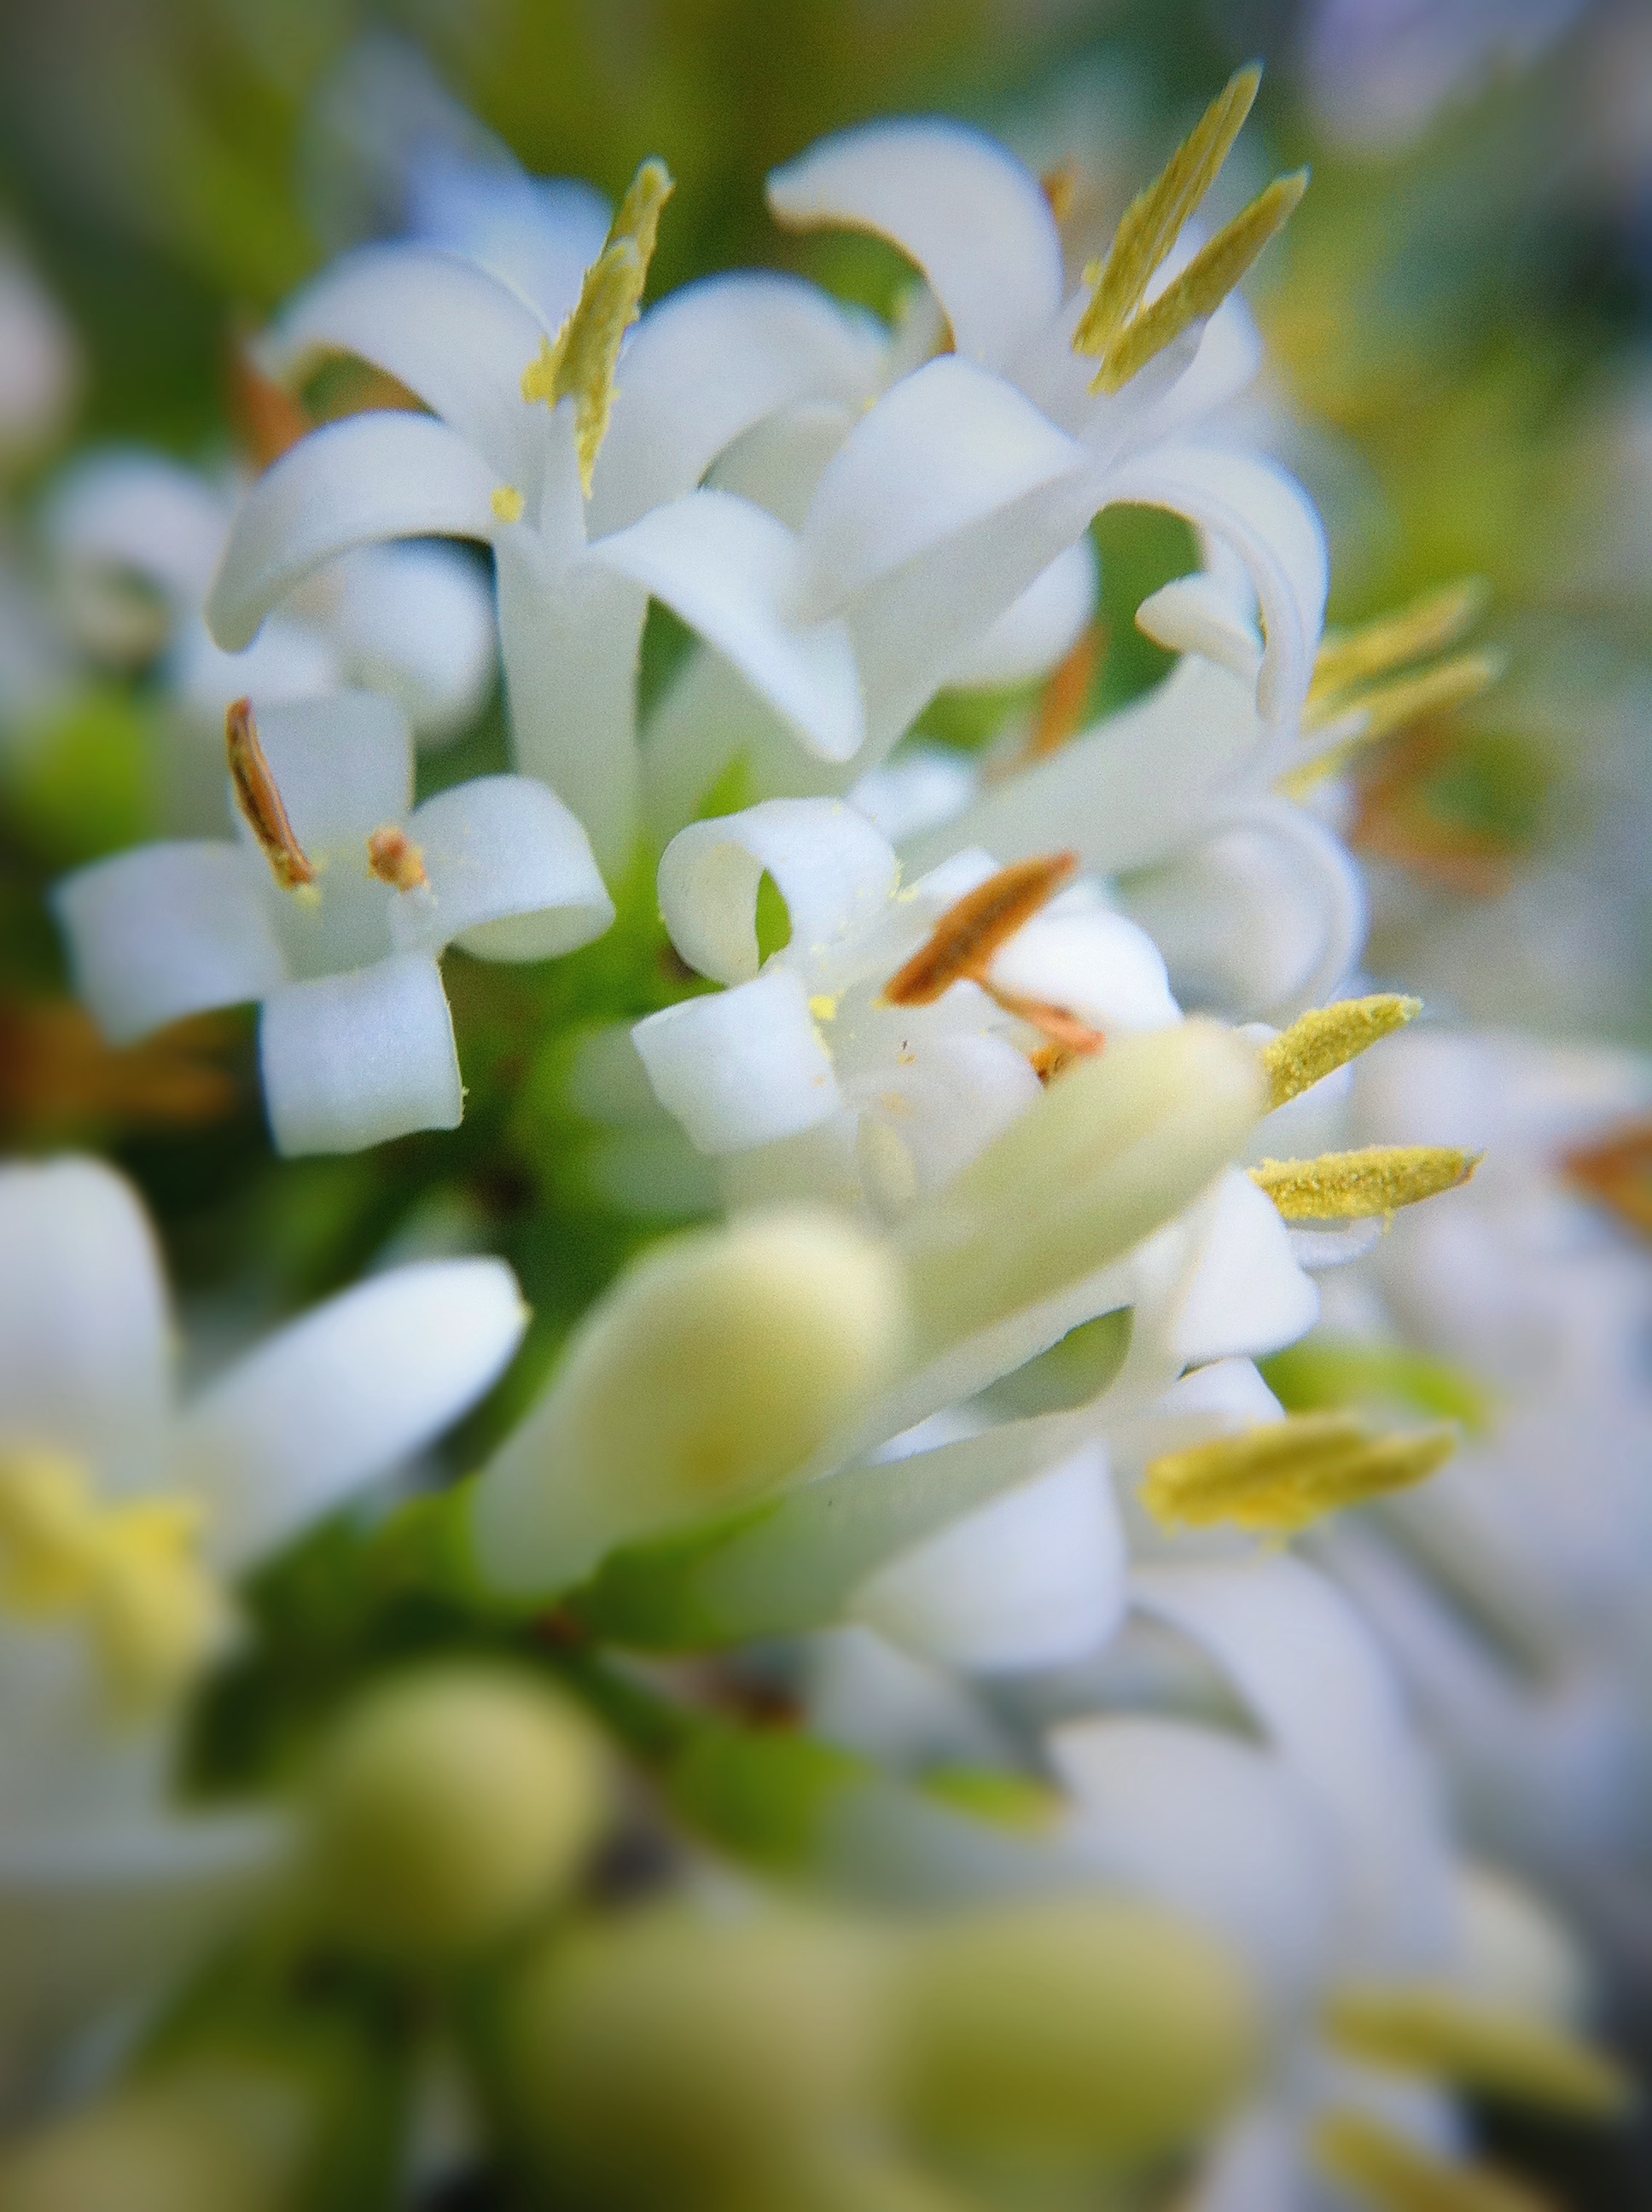 Day 311 – Flowering Privet